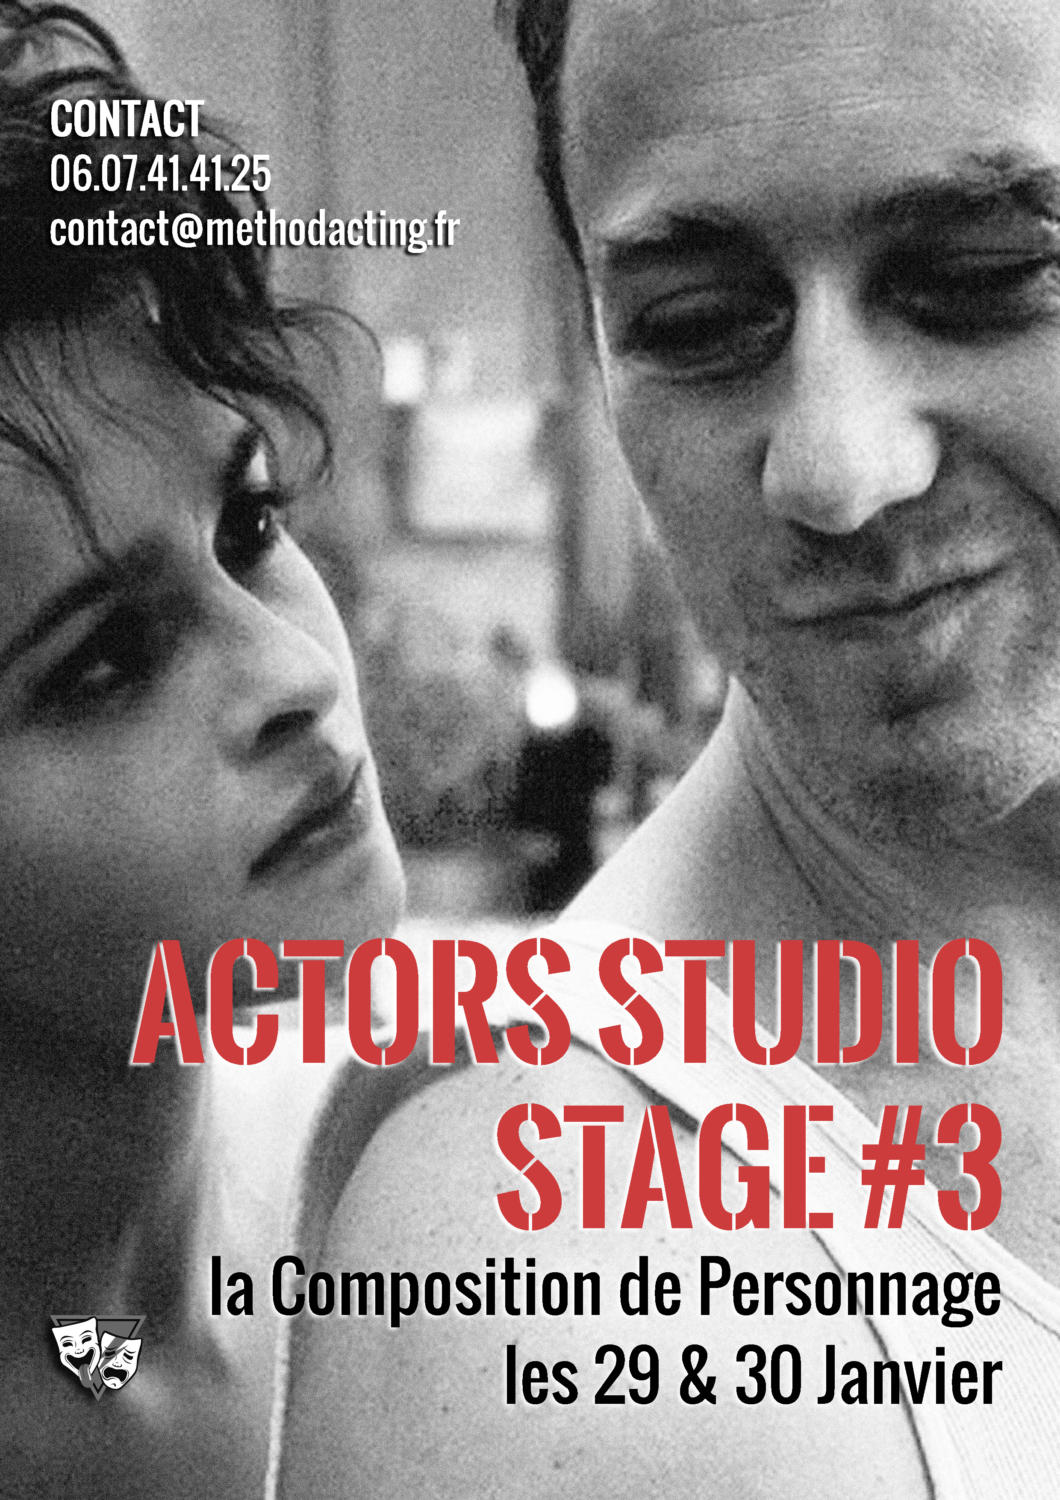 Stages Actors Studio #3